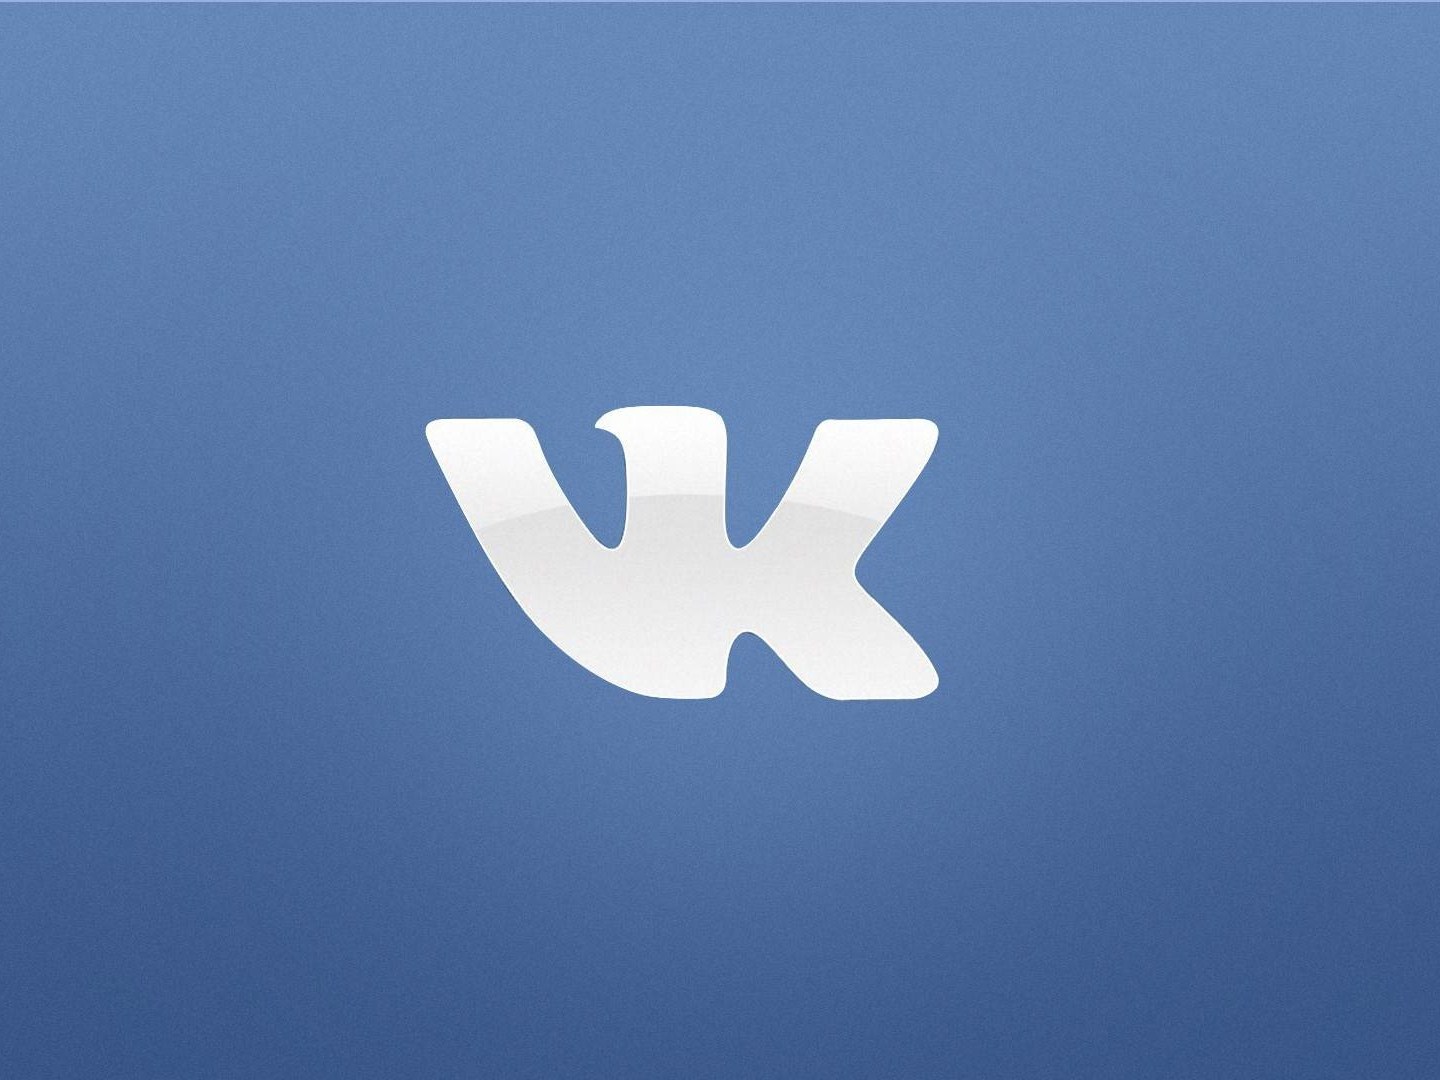 "ВКонтакте" постепенно обновляет дизайн